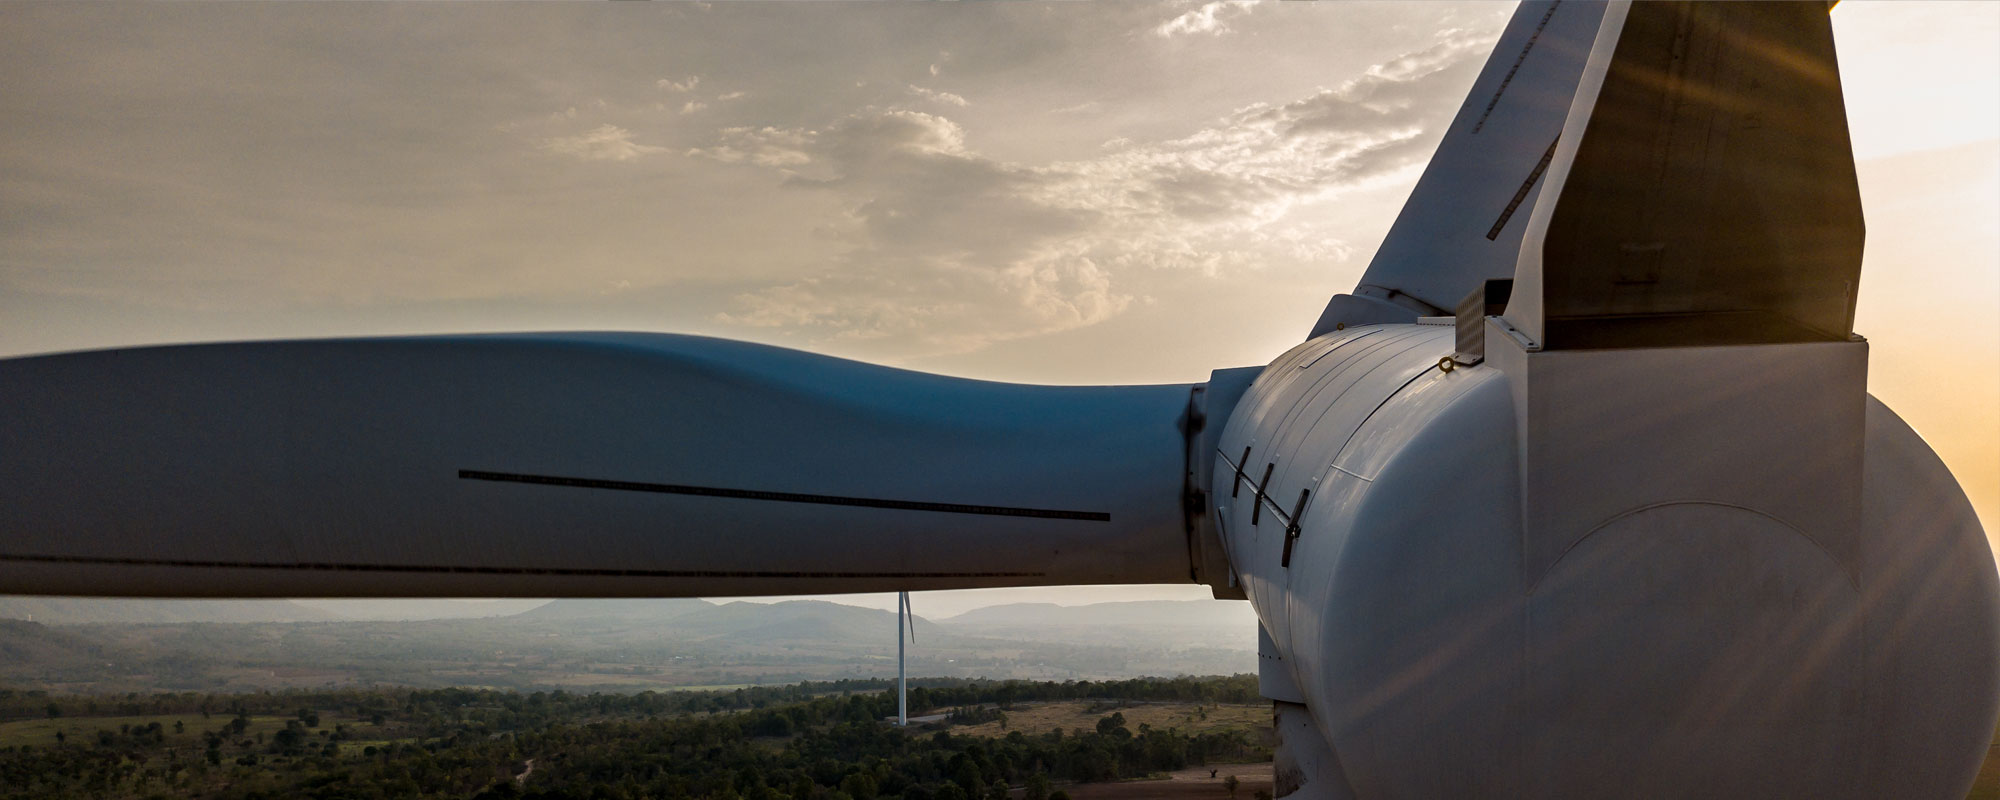 Mehr Leistung, mehr Effizienz: Wie Kegelrollenlager die Windkraftbranche verändern